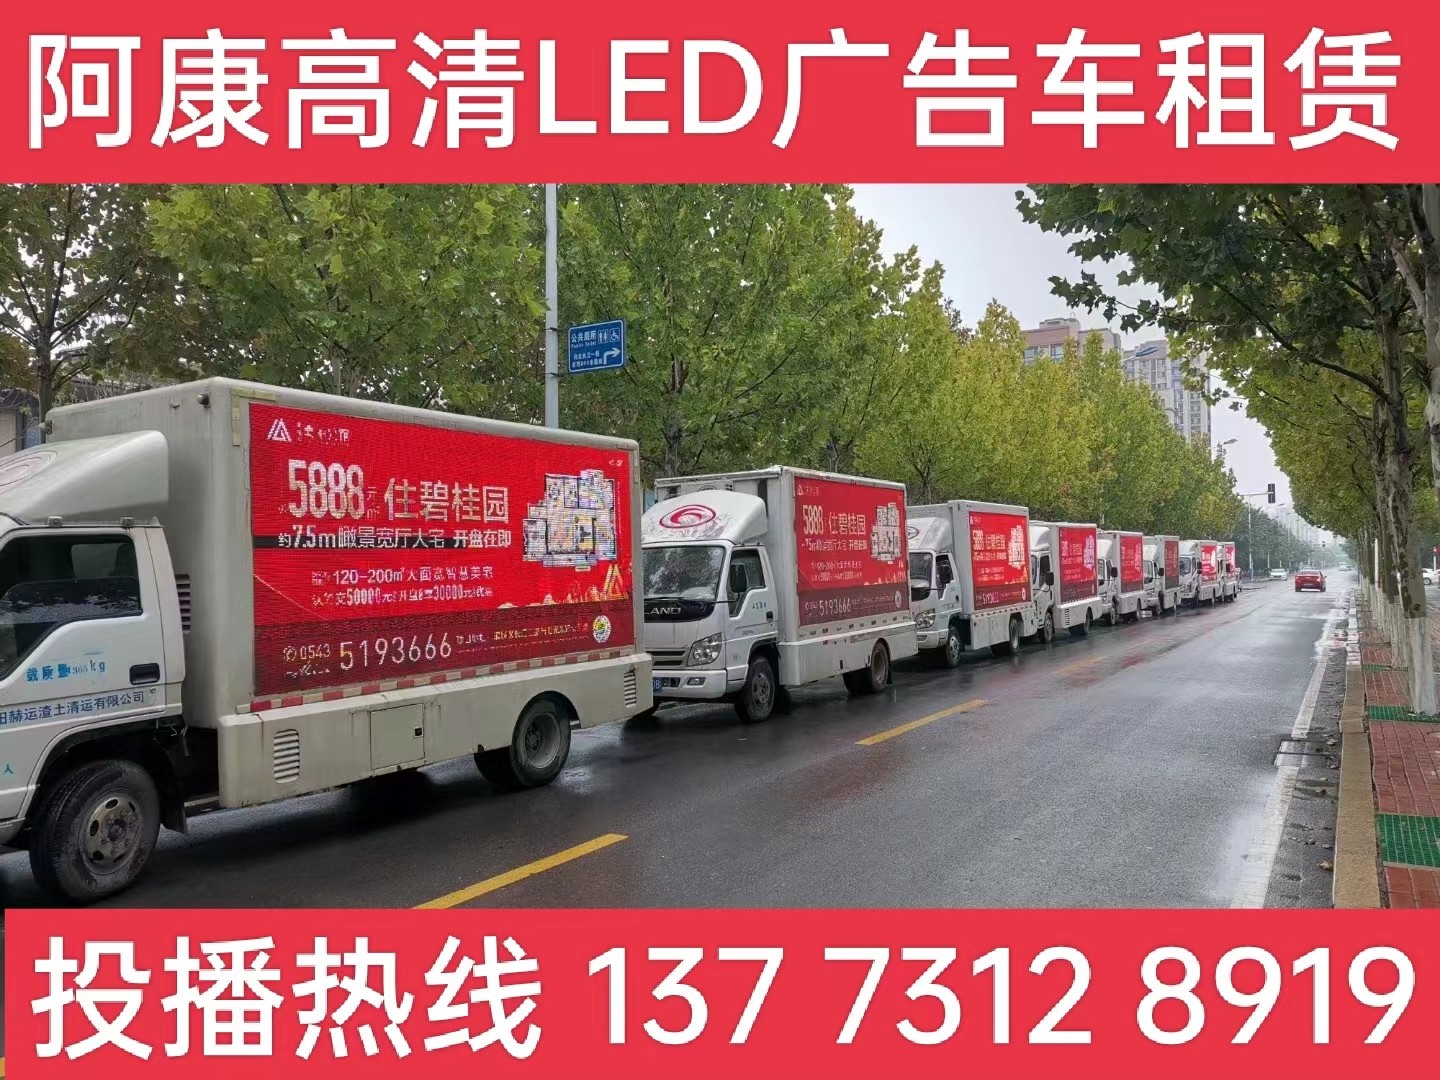 南通市宣传车租赁公司-楼盘LED广告车投放